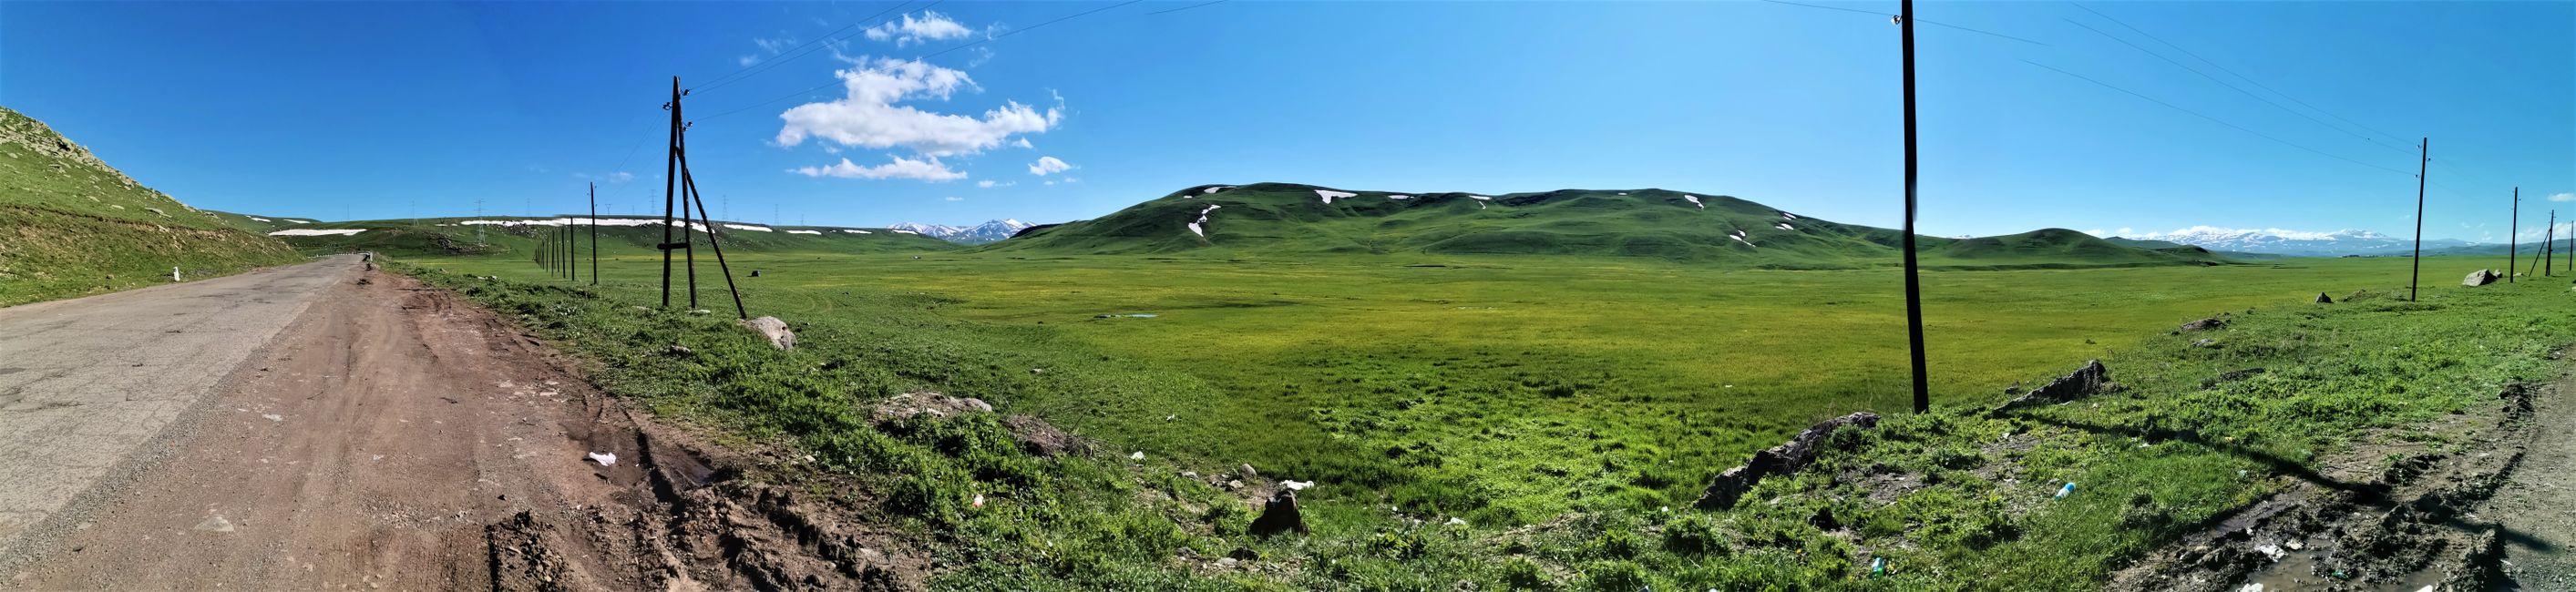 Armenia 'Land of Mountains'